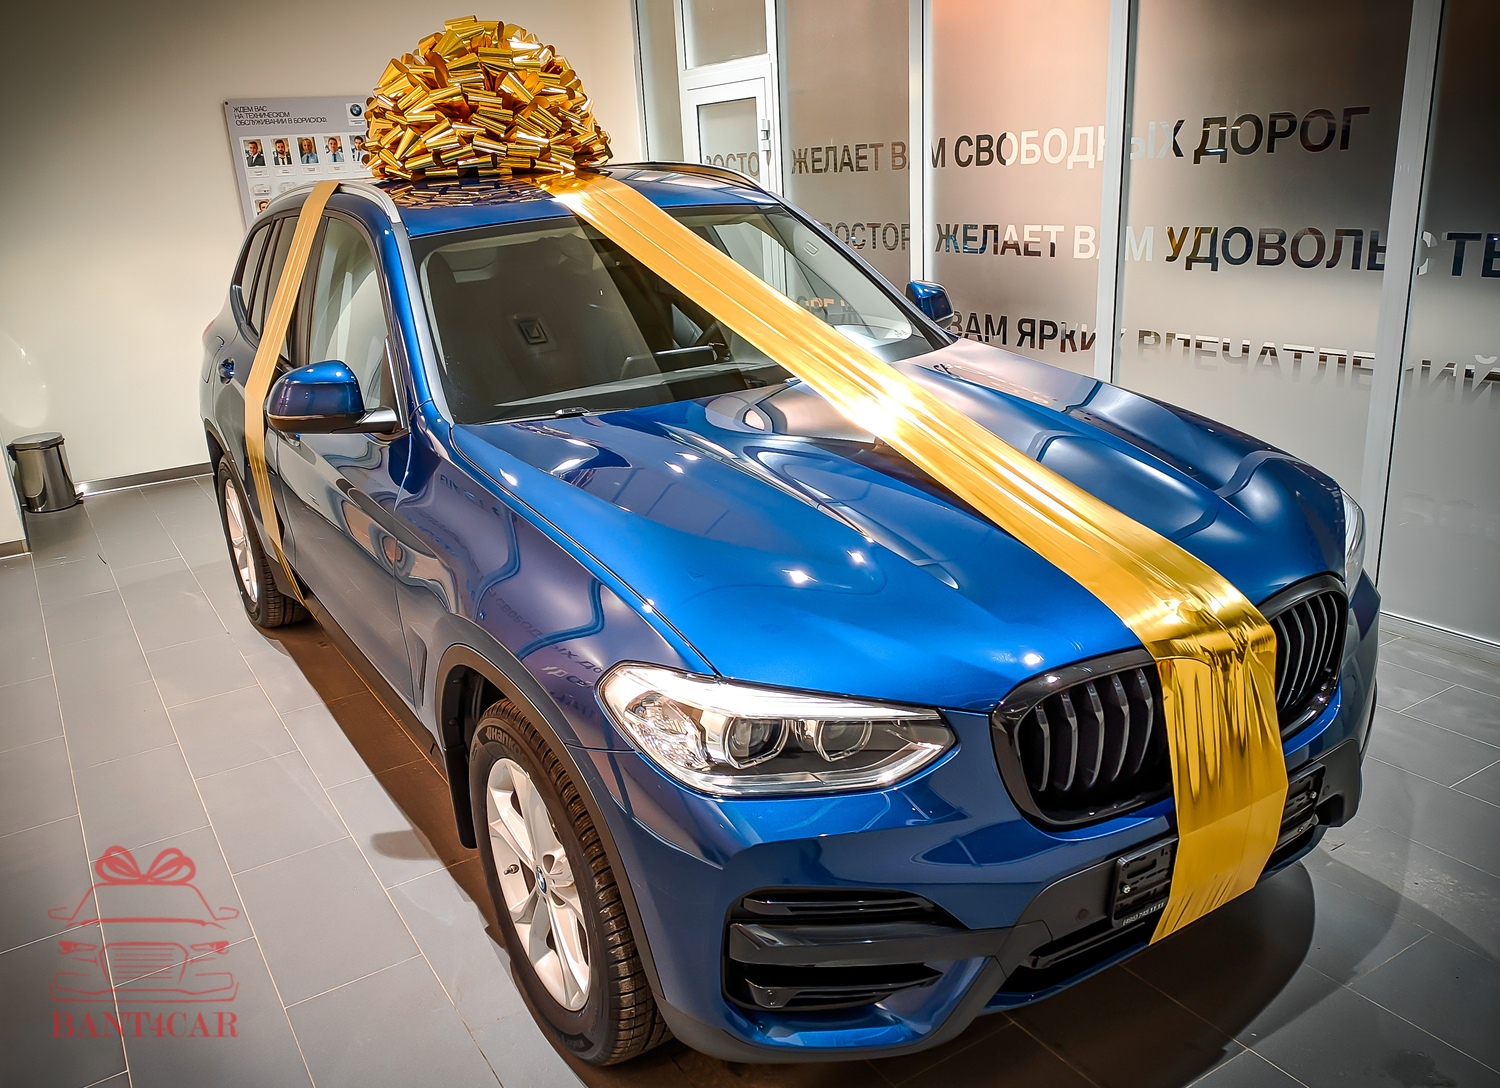 Бант на машину крышу золото BMW и ленты большой купить в москве